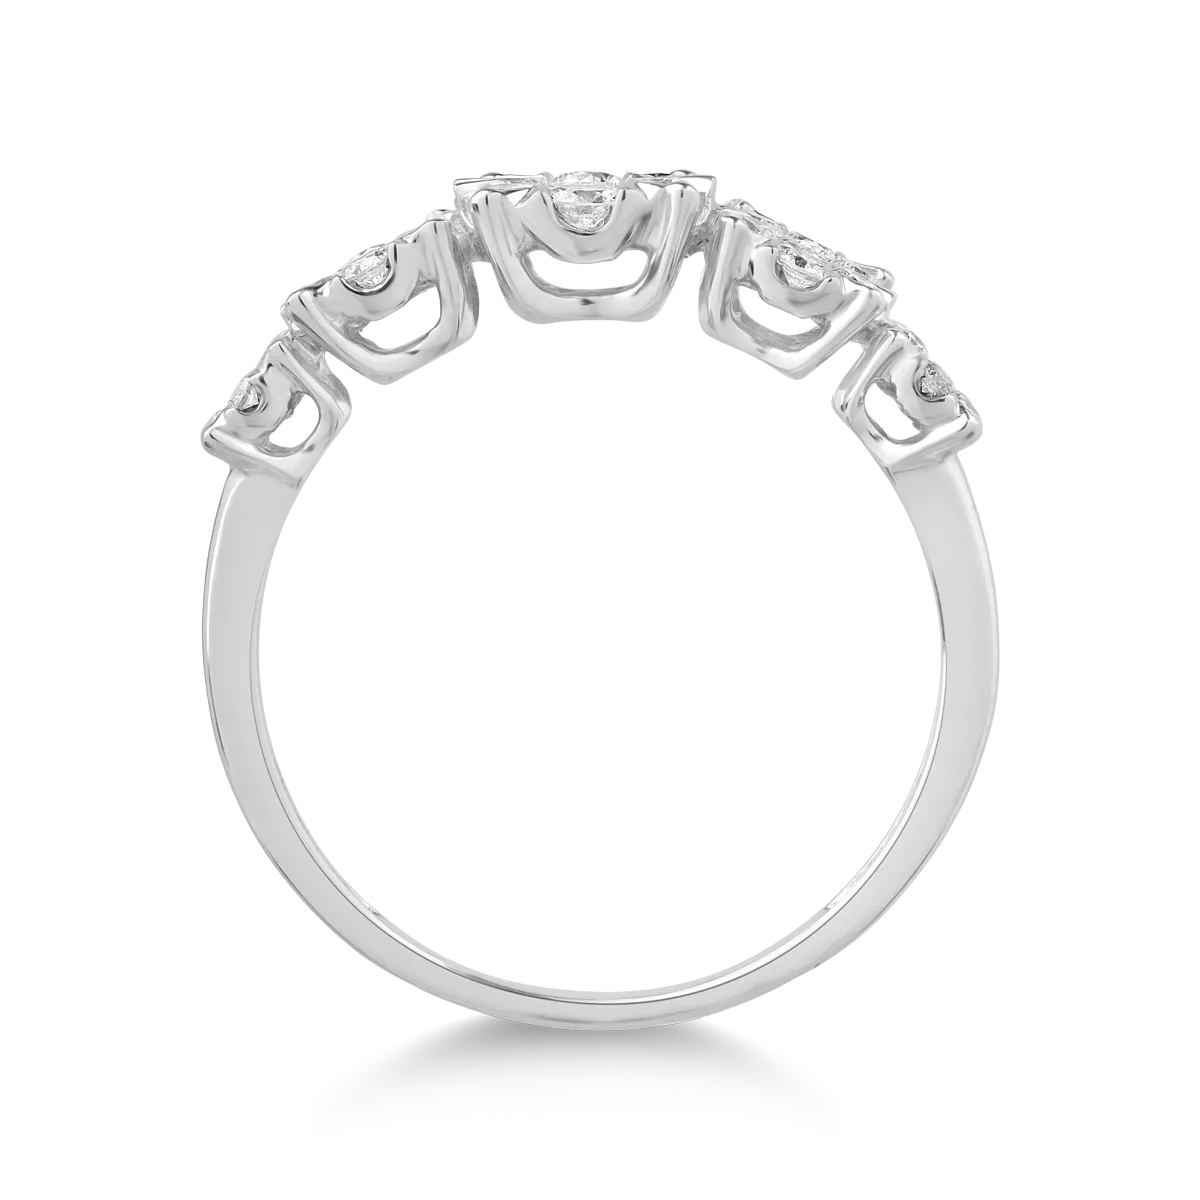 18 karátos fehérarany gyűrű 0.5 karátos gyémántokkal